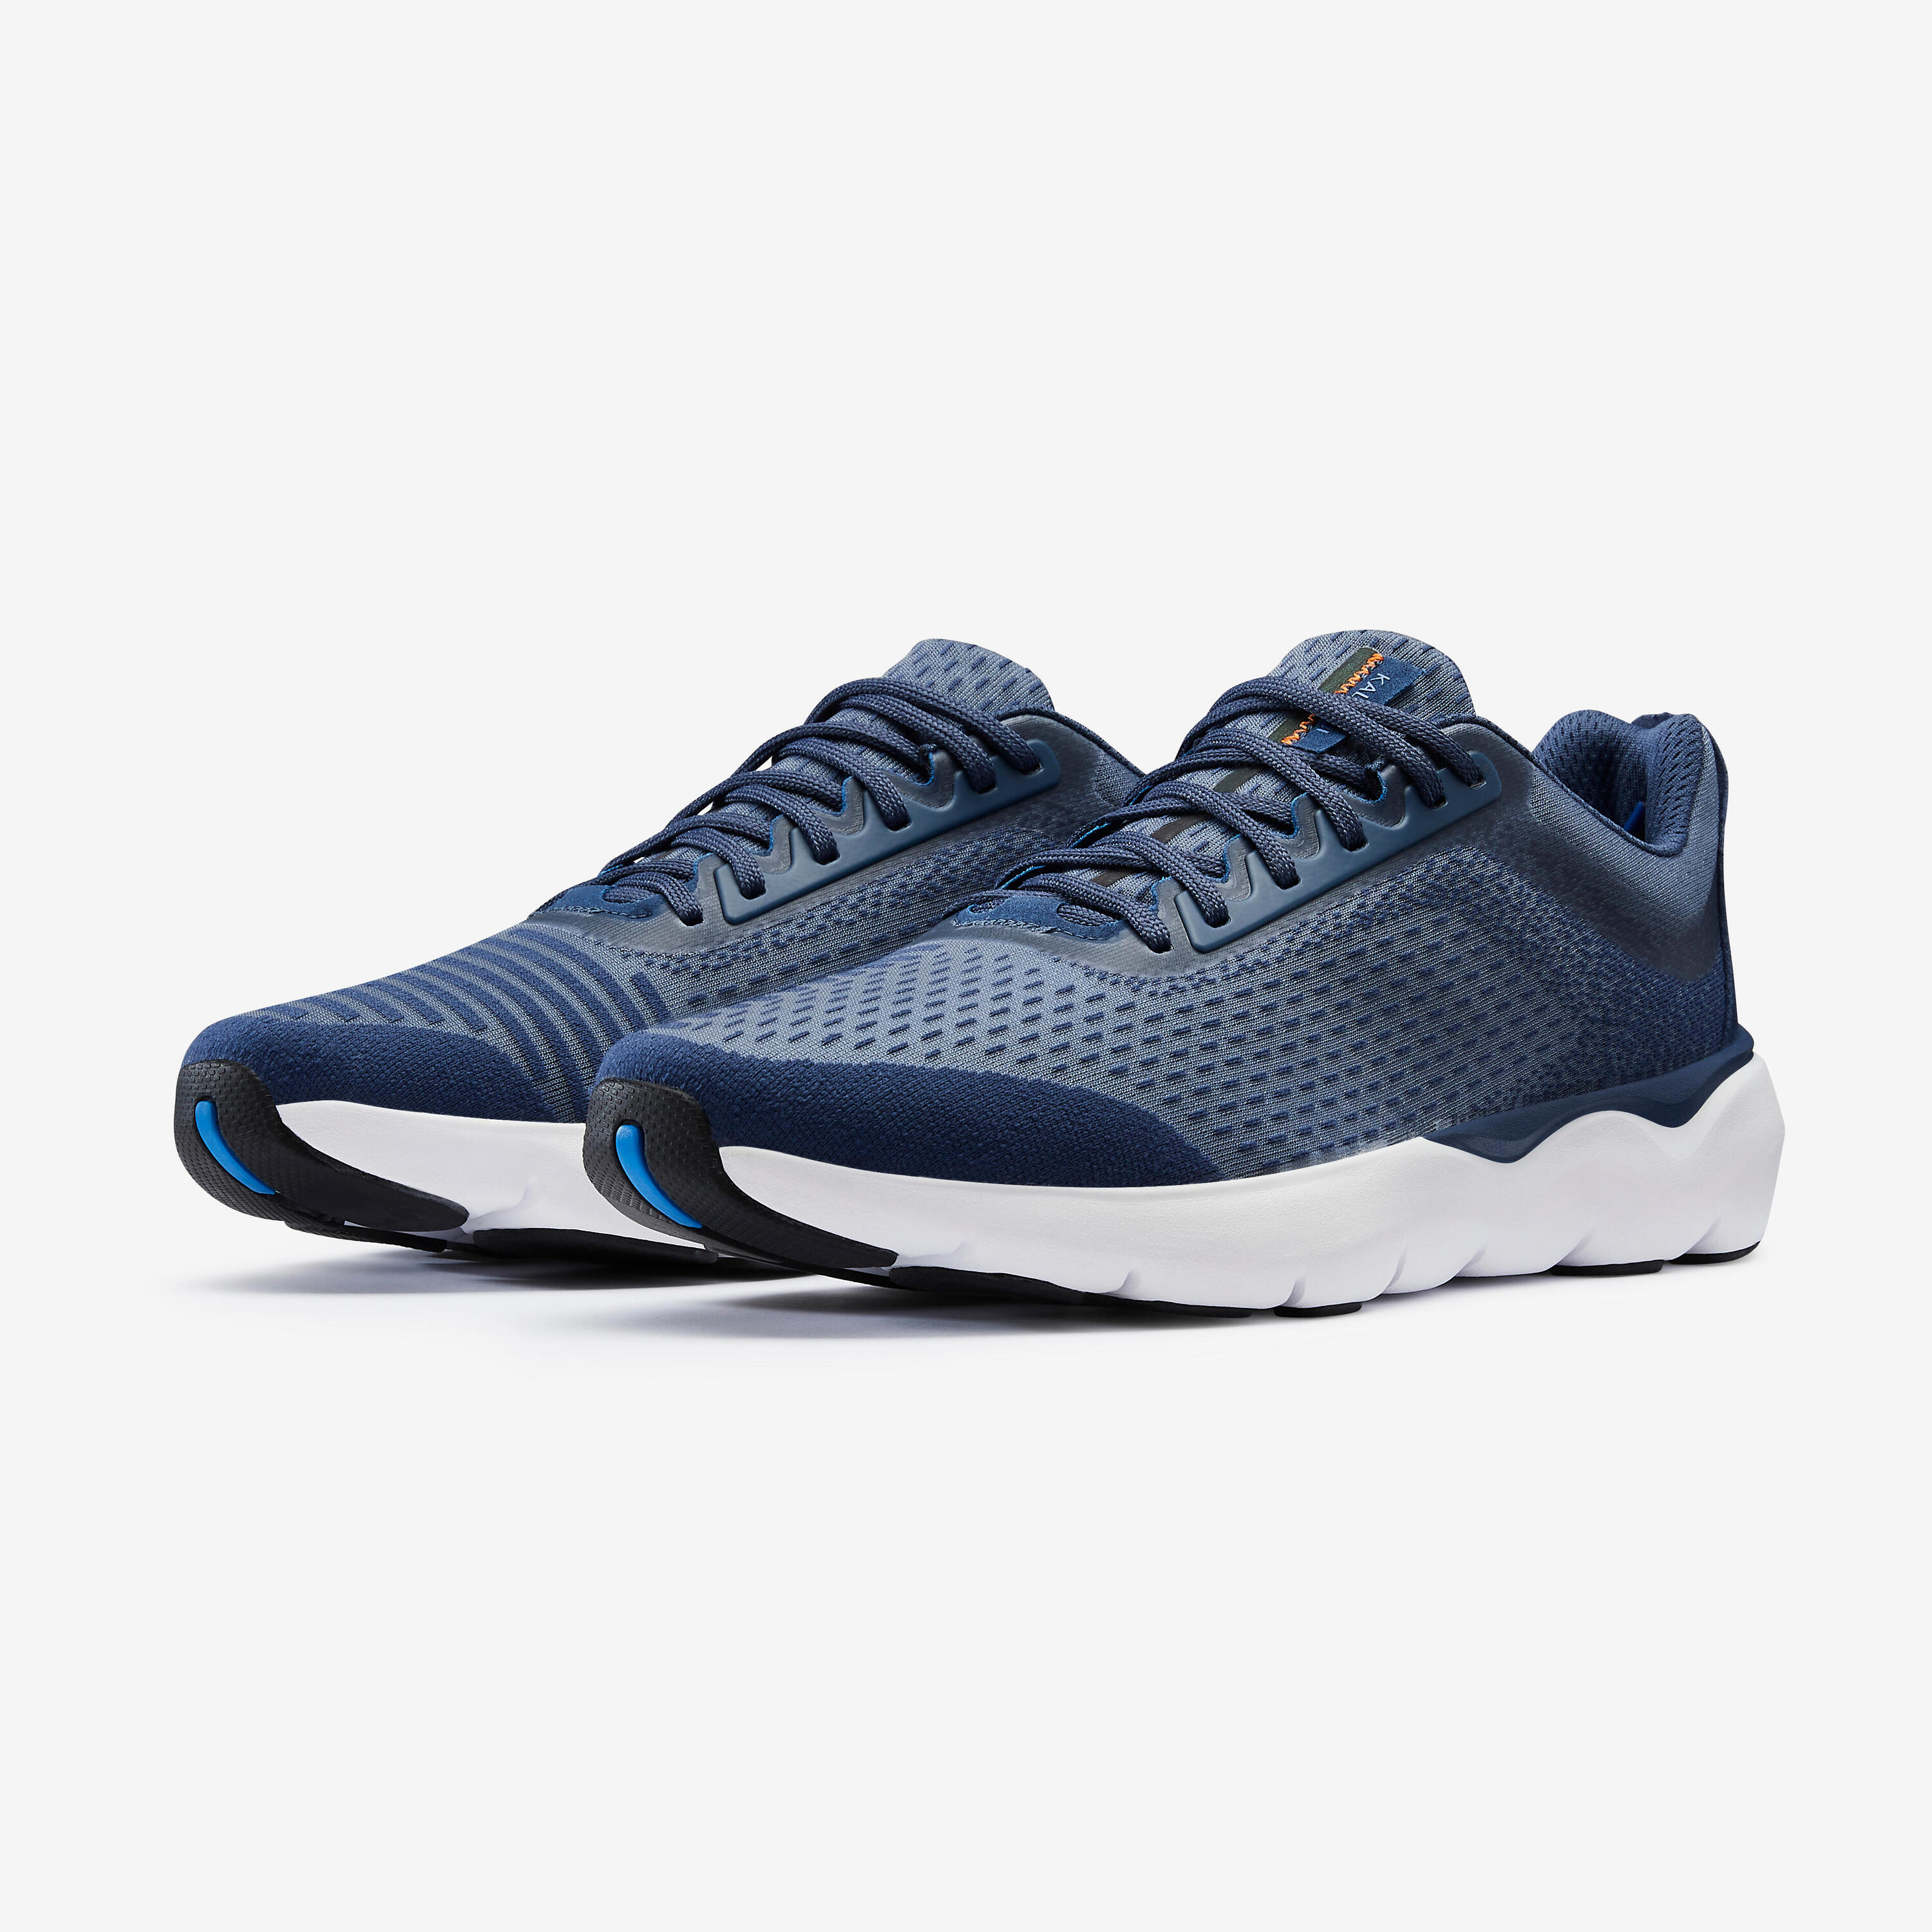 JOGFLOW 500.1 Men's Running Shoes - Dark Blue 2/8